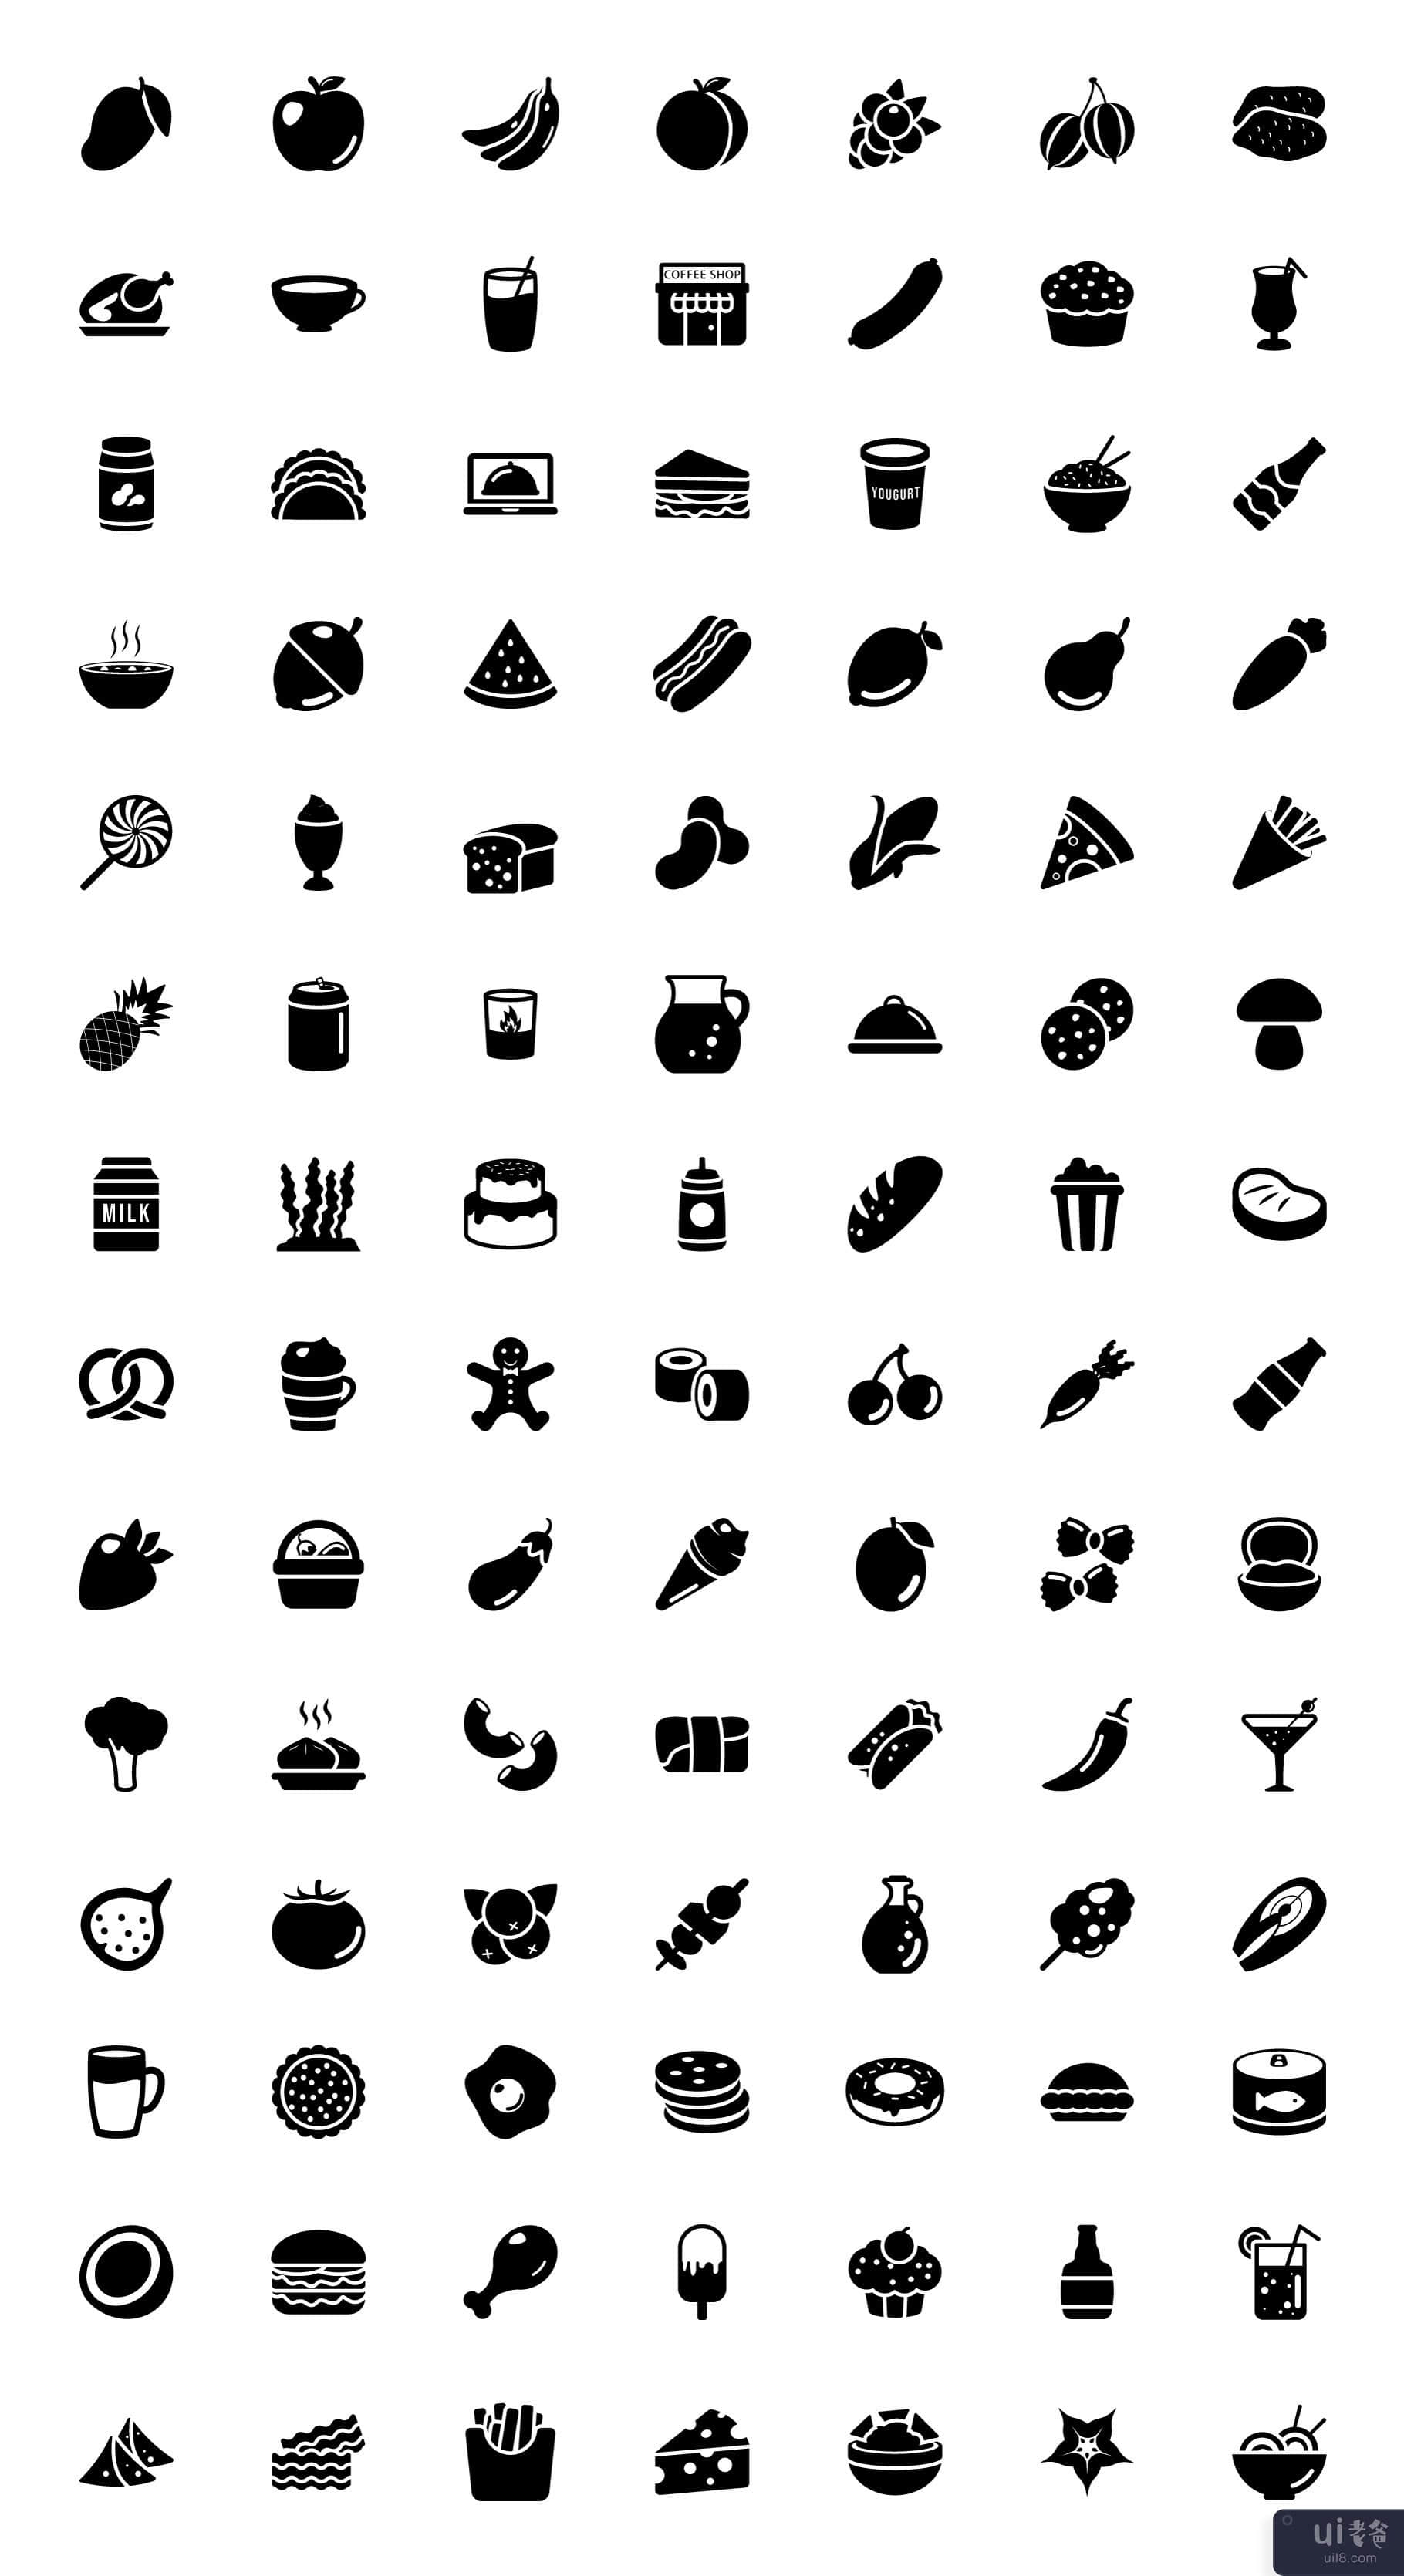 食物平面图标包(Pack of Food Flat Icons)插图